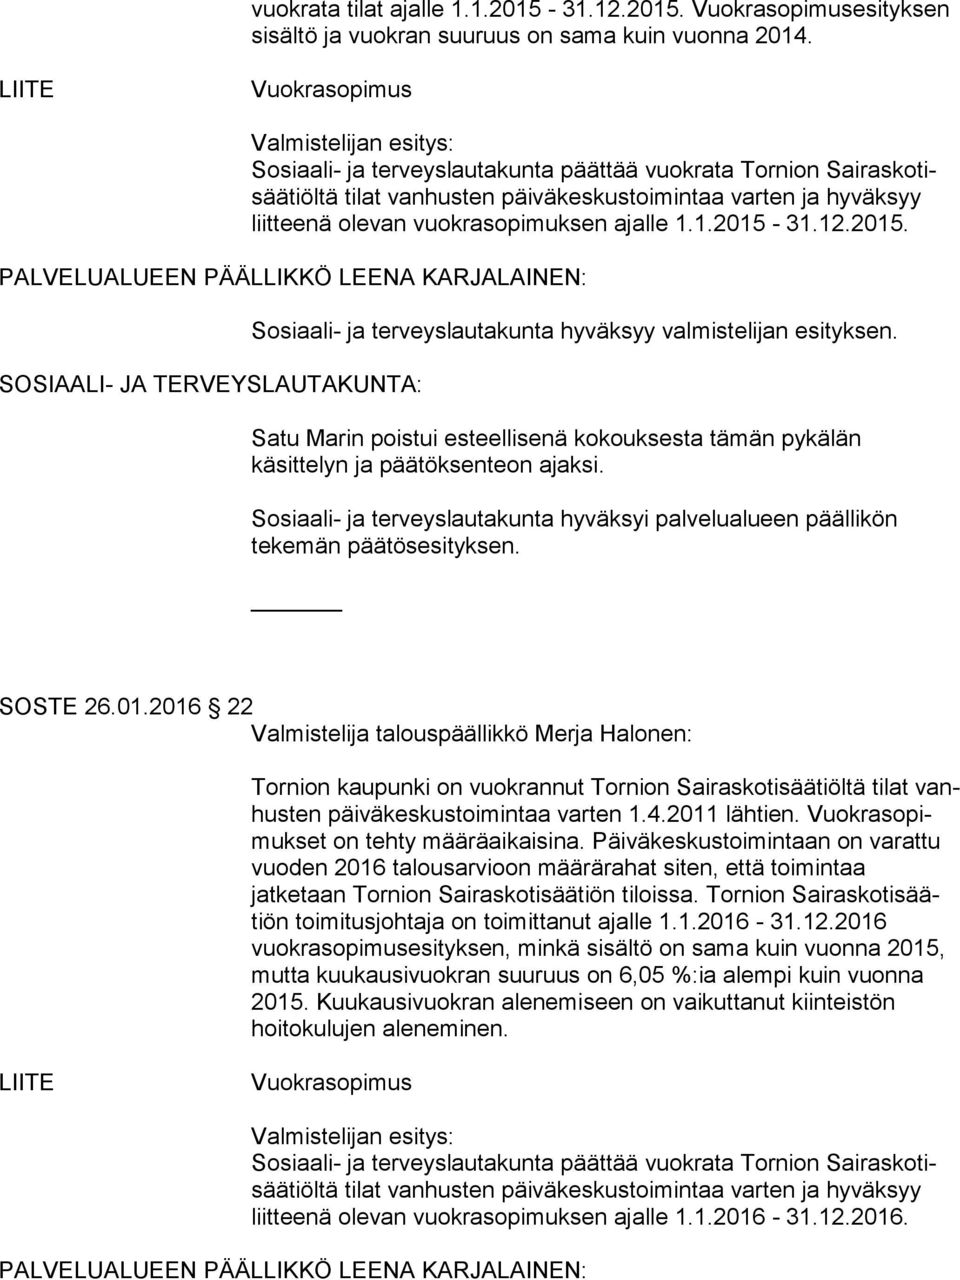 vuokrasopimuksen ajalle 1.1.2015-31.12.2015. SOSIAALI- JA TERVEYSLAUTAKUNTA: Sosiaali- ja terveyslautakunta hyväksyy valmistelijan esityksen.